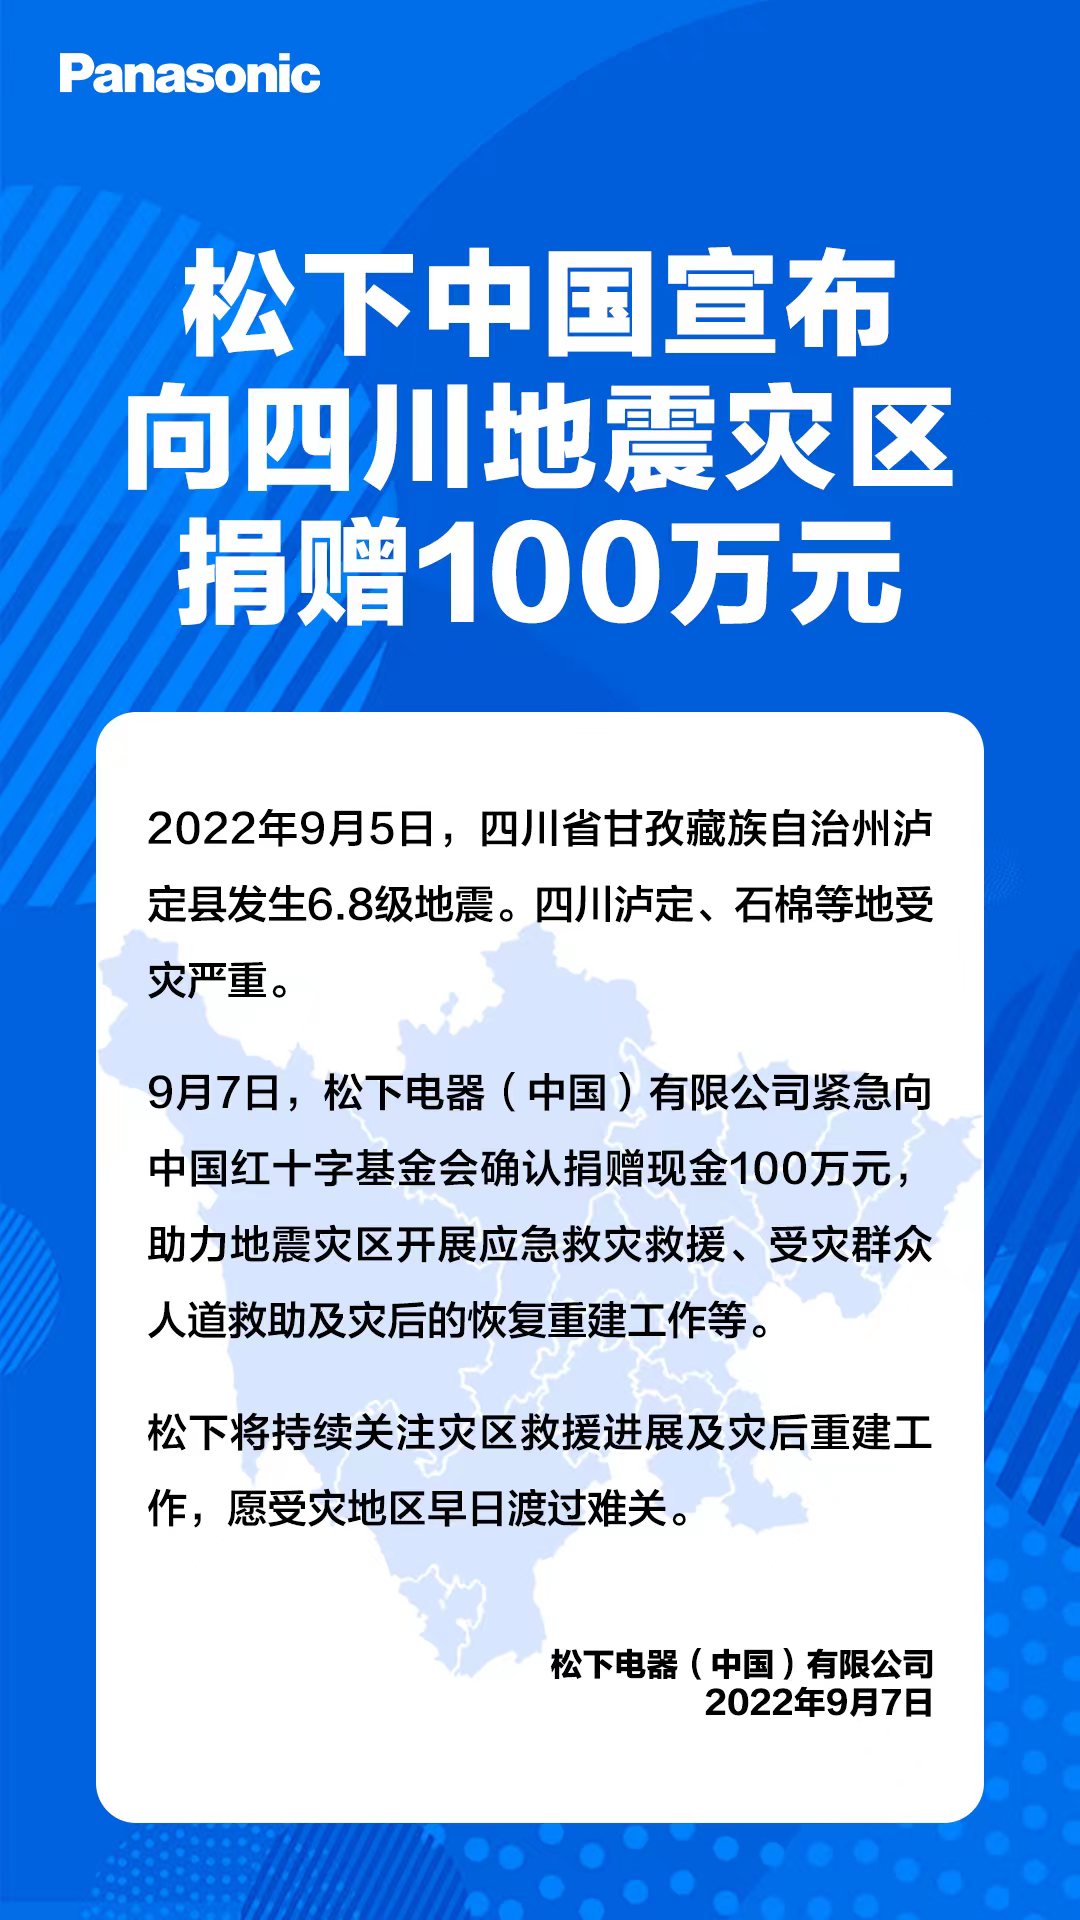 松下中国宣布向四川地震灾区捐赠100万元